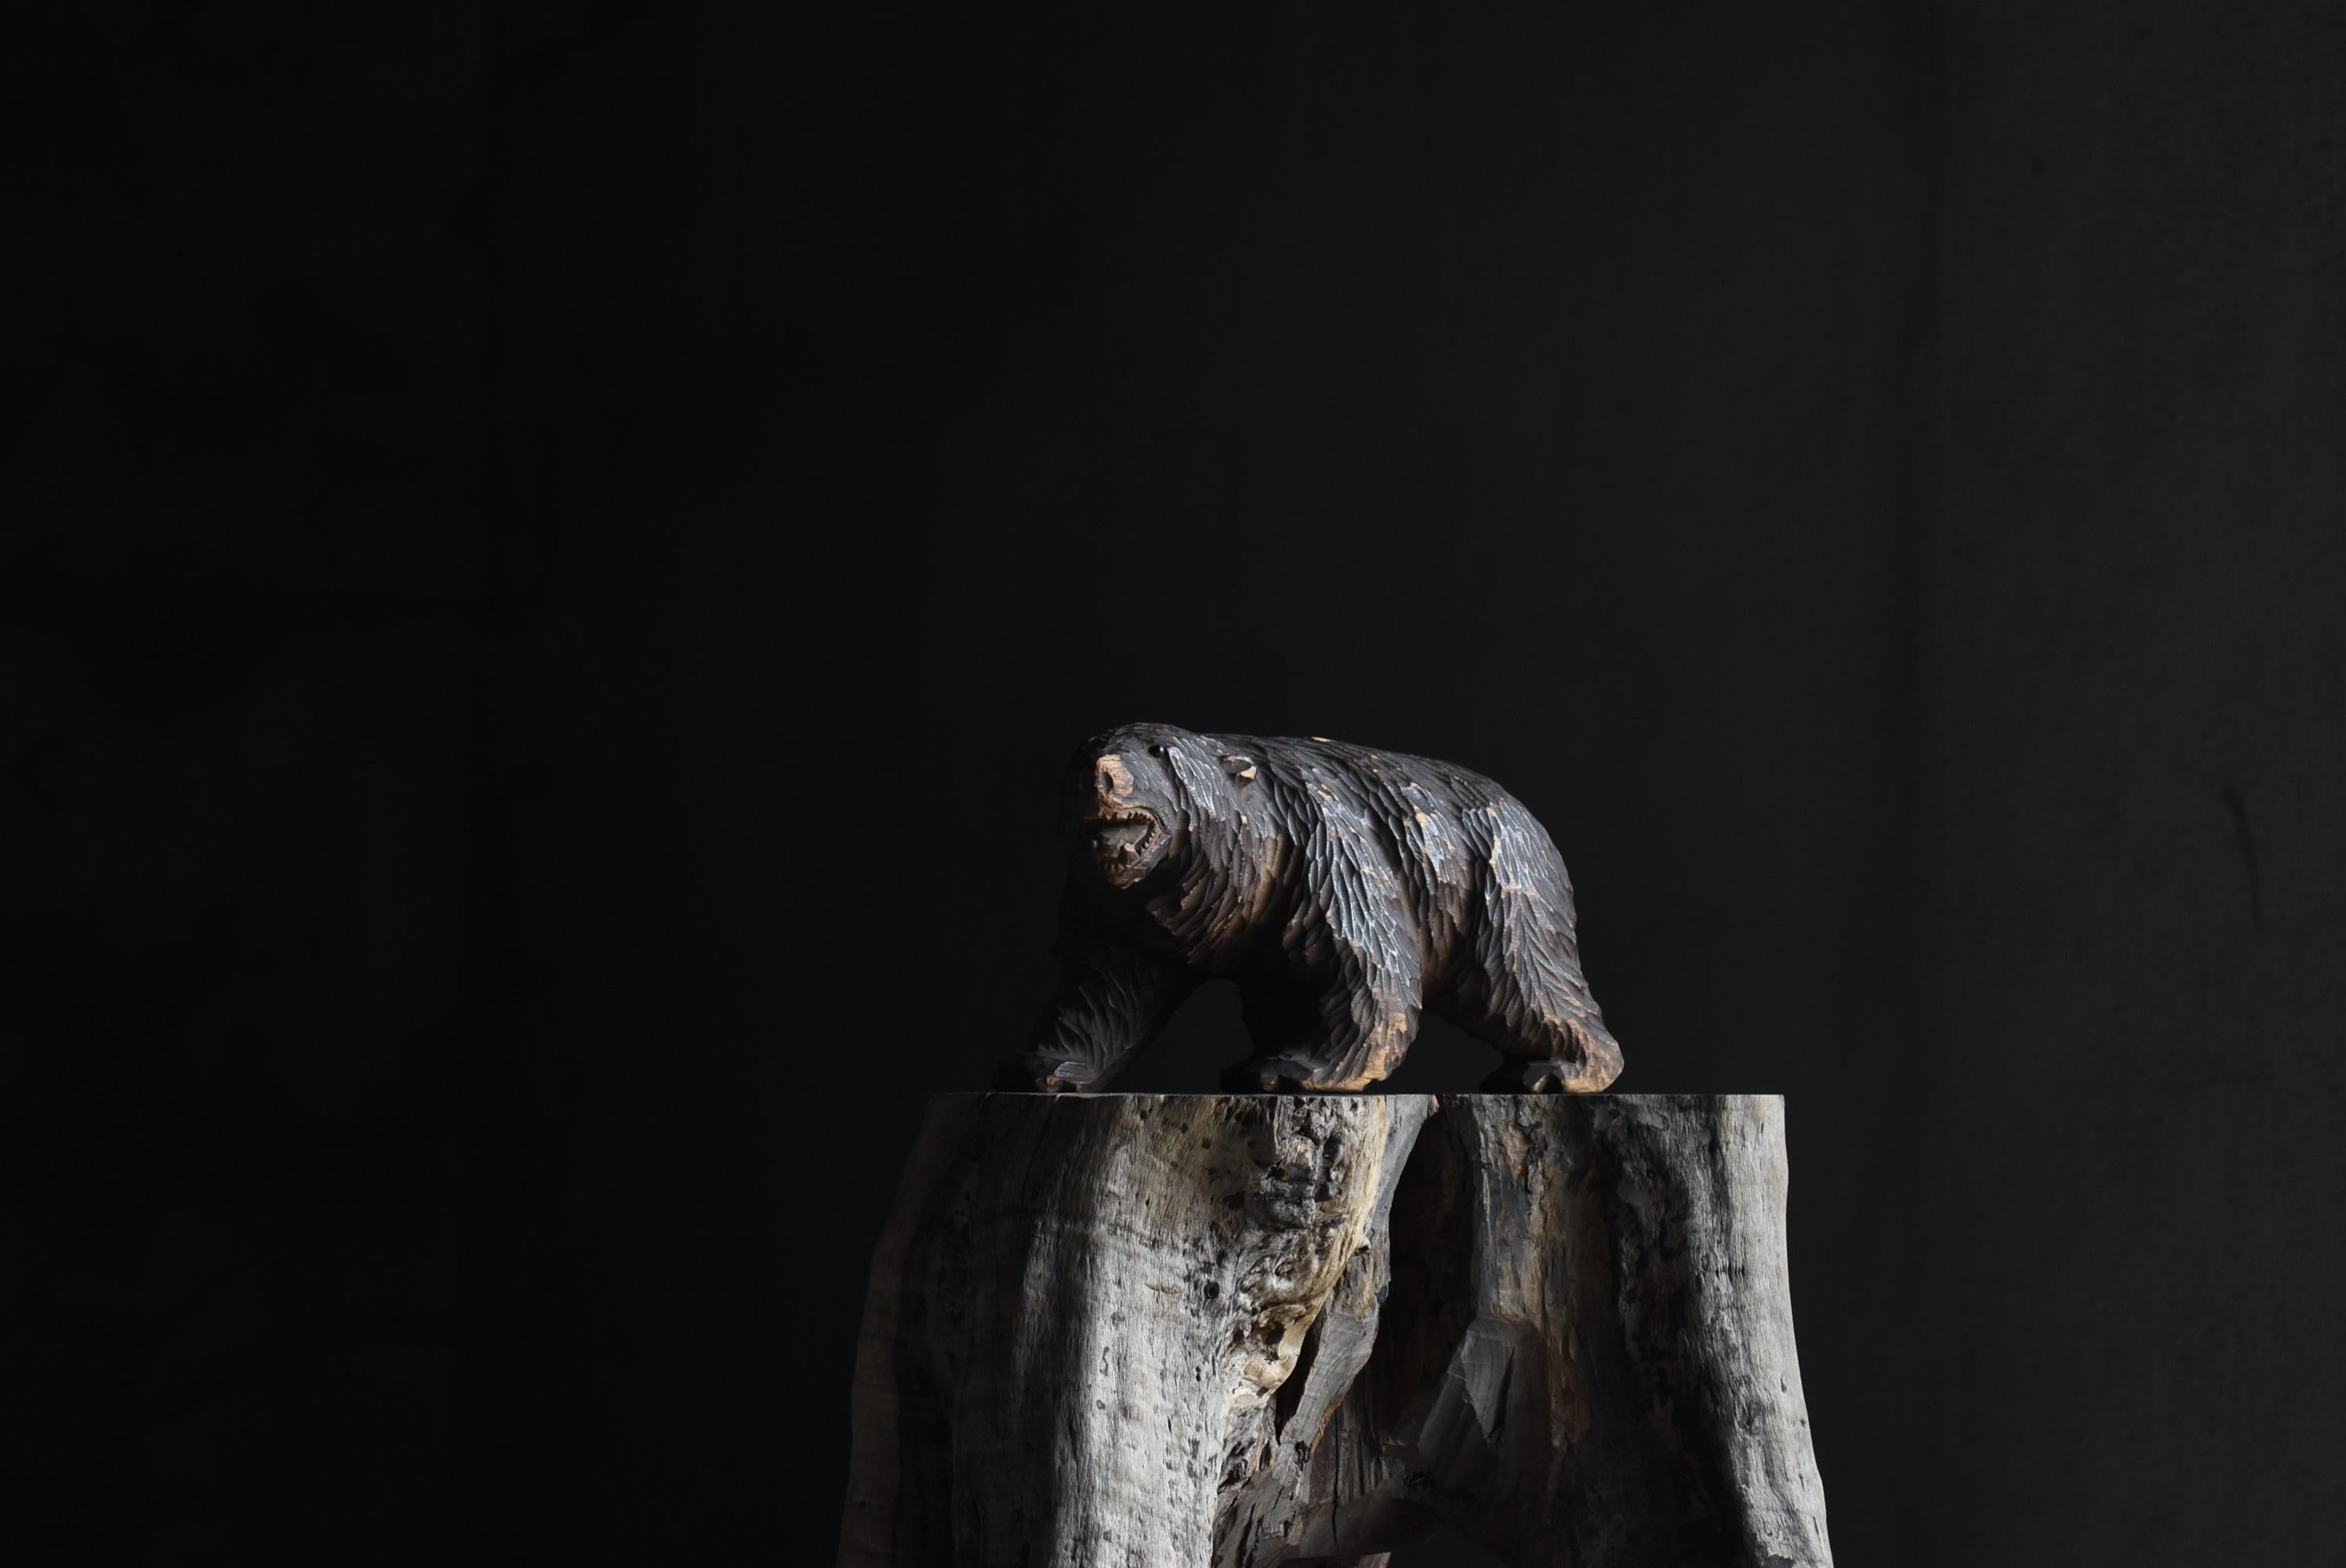 Es handelt sich um ein hölzernes Volkskunstwerk in Form eines Bären.
Hauptsächlich in Hokkaido hergestellt.
Es handelt sich um eine Holzschnitzerei aus den Jahren 1930 bis 1950.

Die Augen sind aus Glas.
Diese Art ist in Japan selten.

Ein